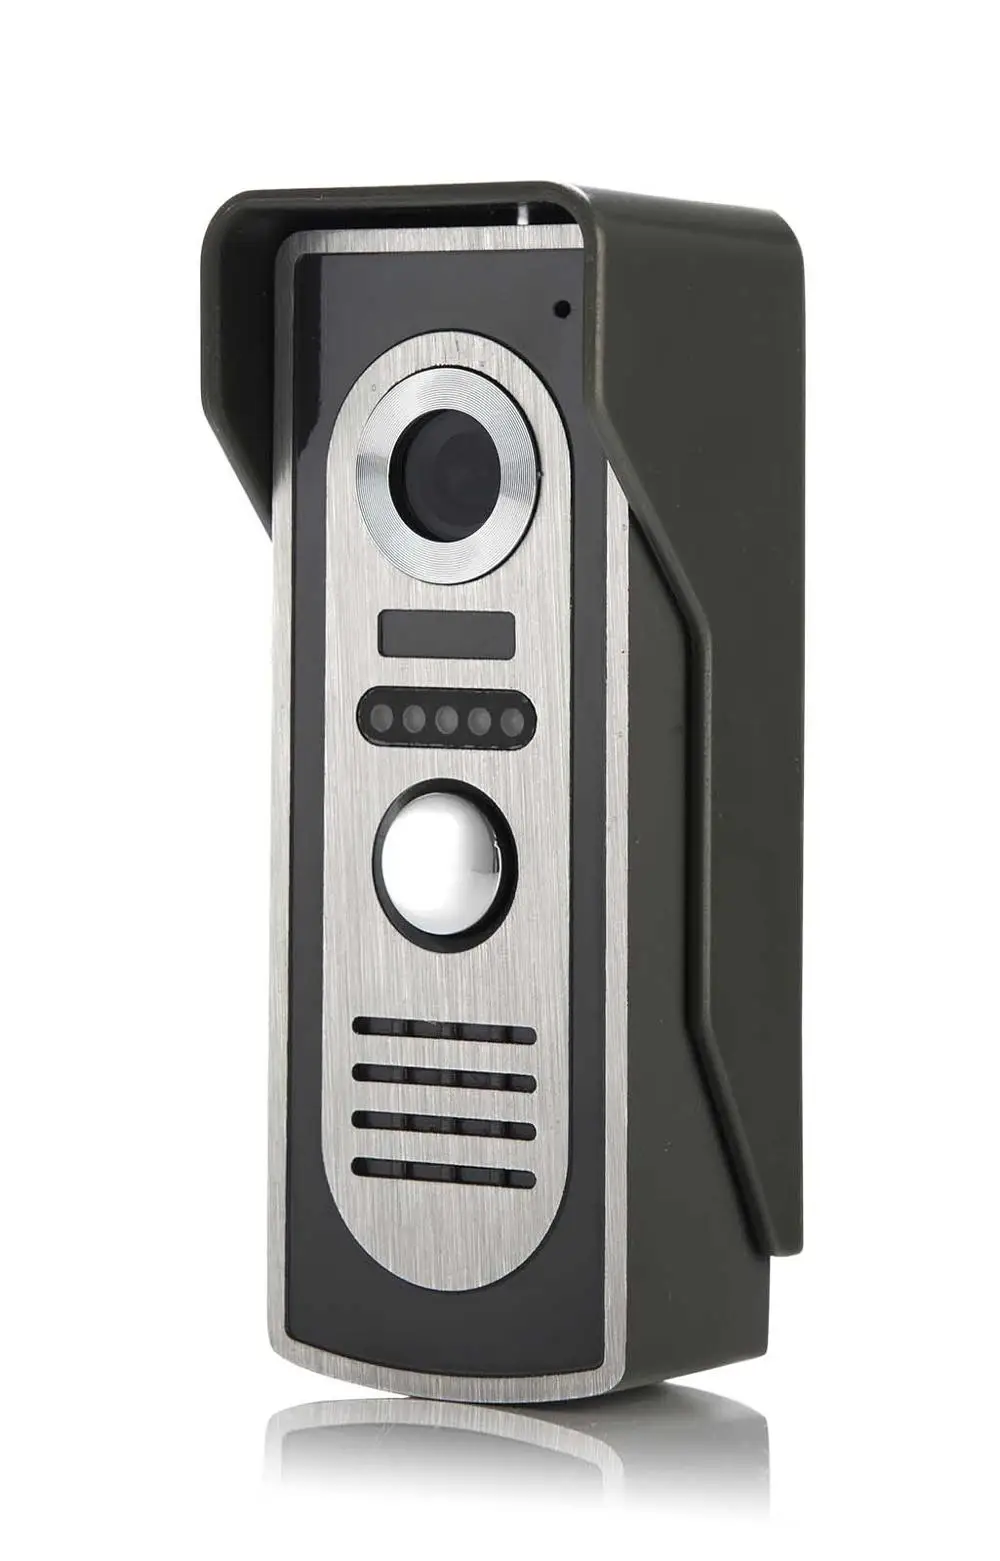 Yobangбезопасности видеодомофон " дюймовый монитор проводной видео телефон двери дверной звонок домашний монитор для камеры слежения комплект для дома квартиры - Цвет: M2